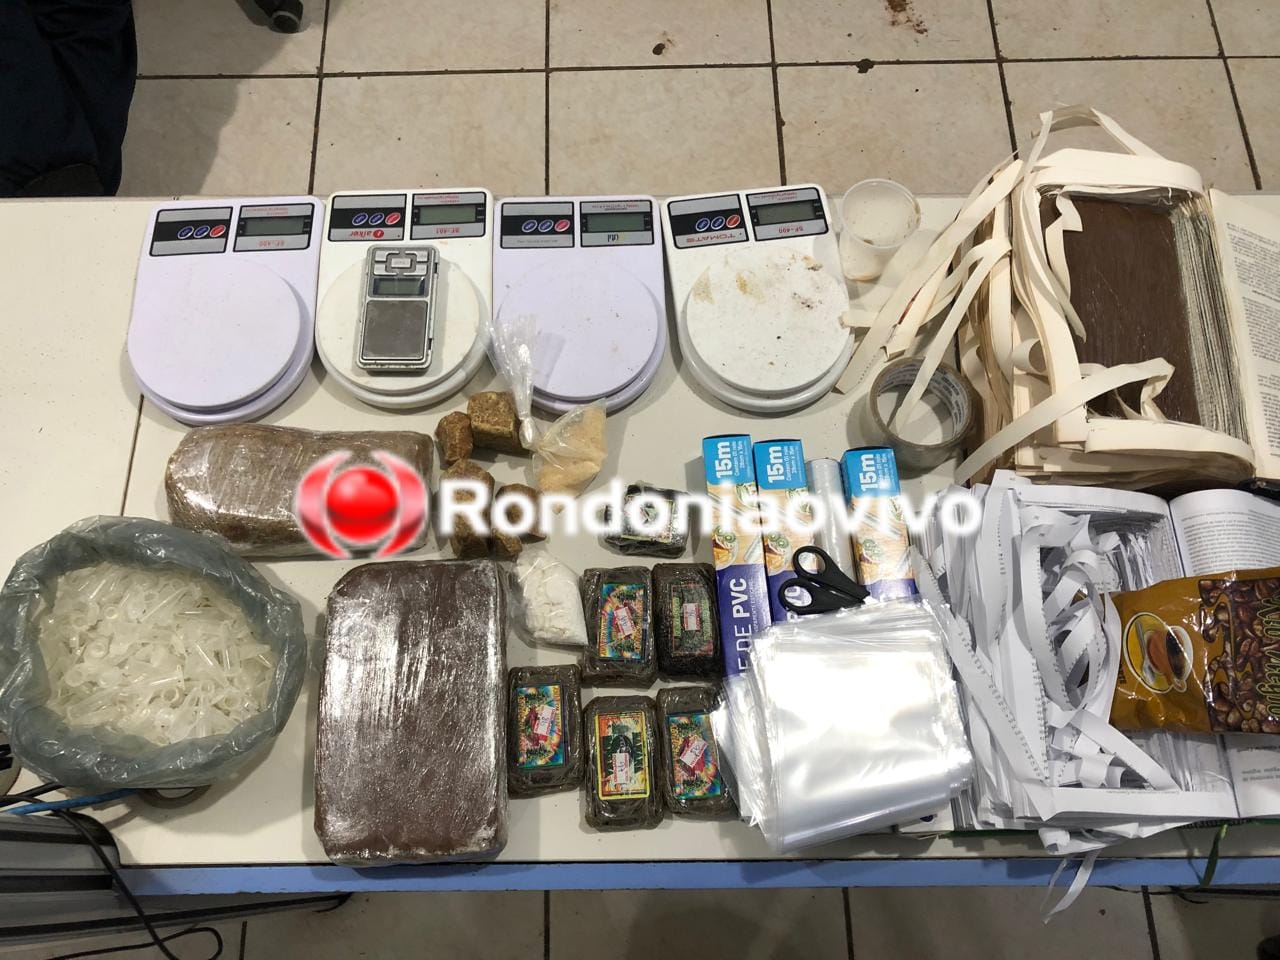 14 TABLETES: Droga que veio de São Paulo é encontrada em fundo falso de piso no Porto Madero